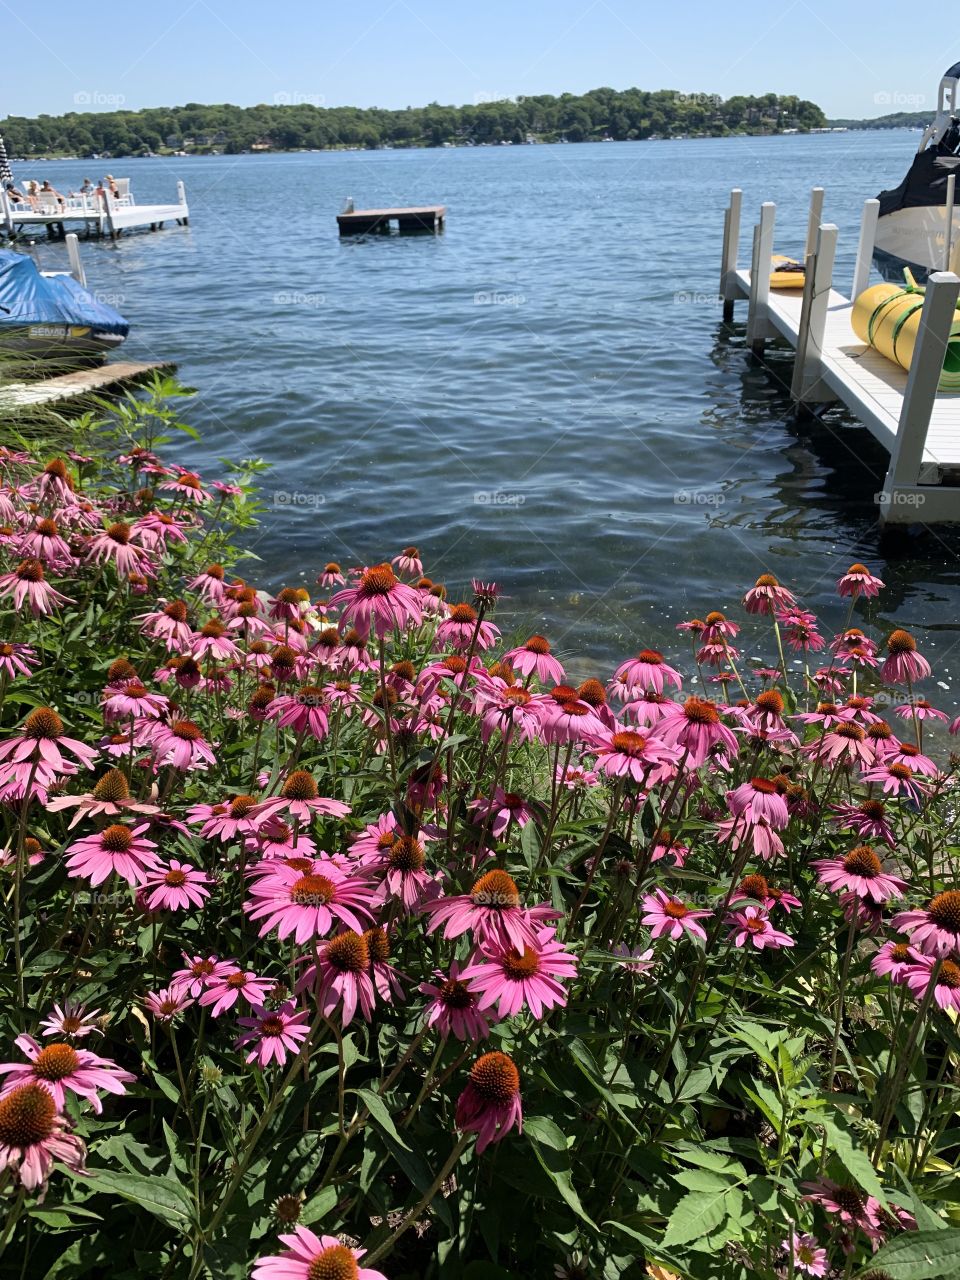 Lake blooms